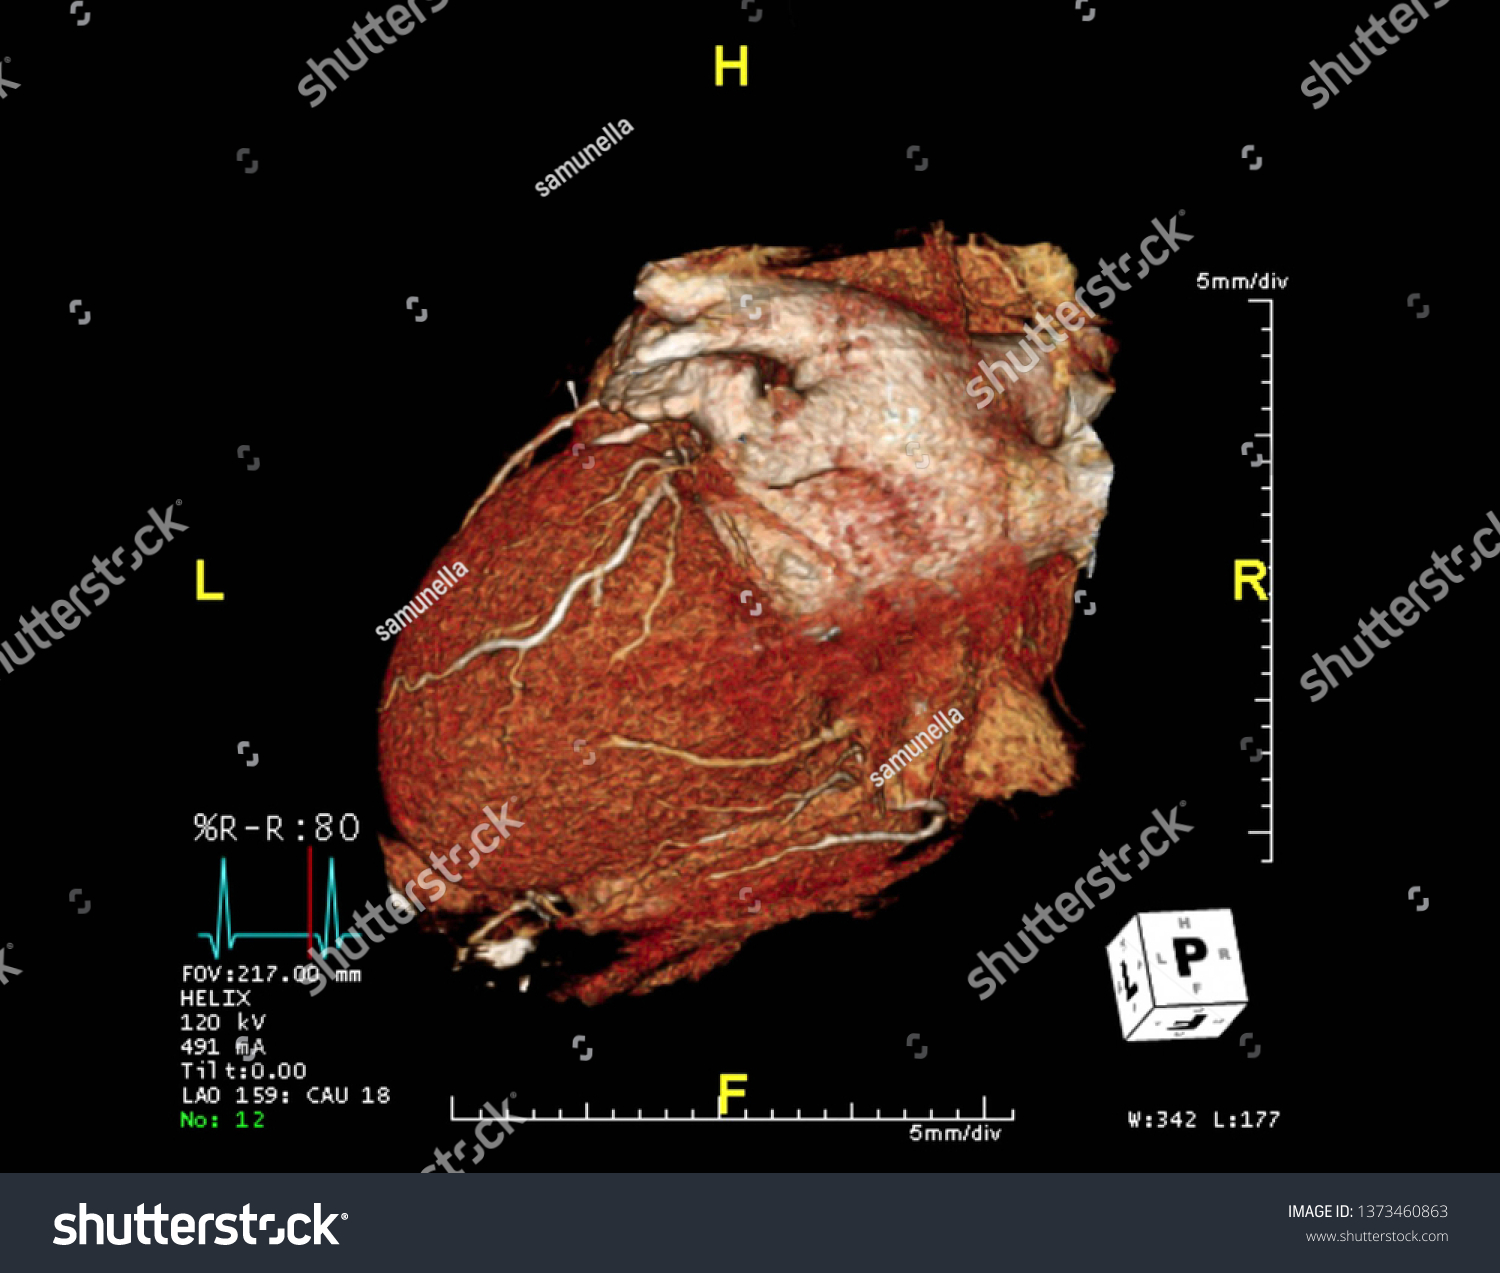 Cta冠動脈3dレンダリングイメージlaoビューを画面から表示 心臓血管疾患のct血管造影 法 のイラスト素材